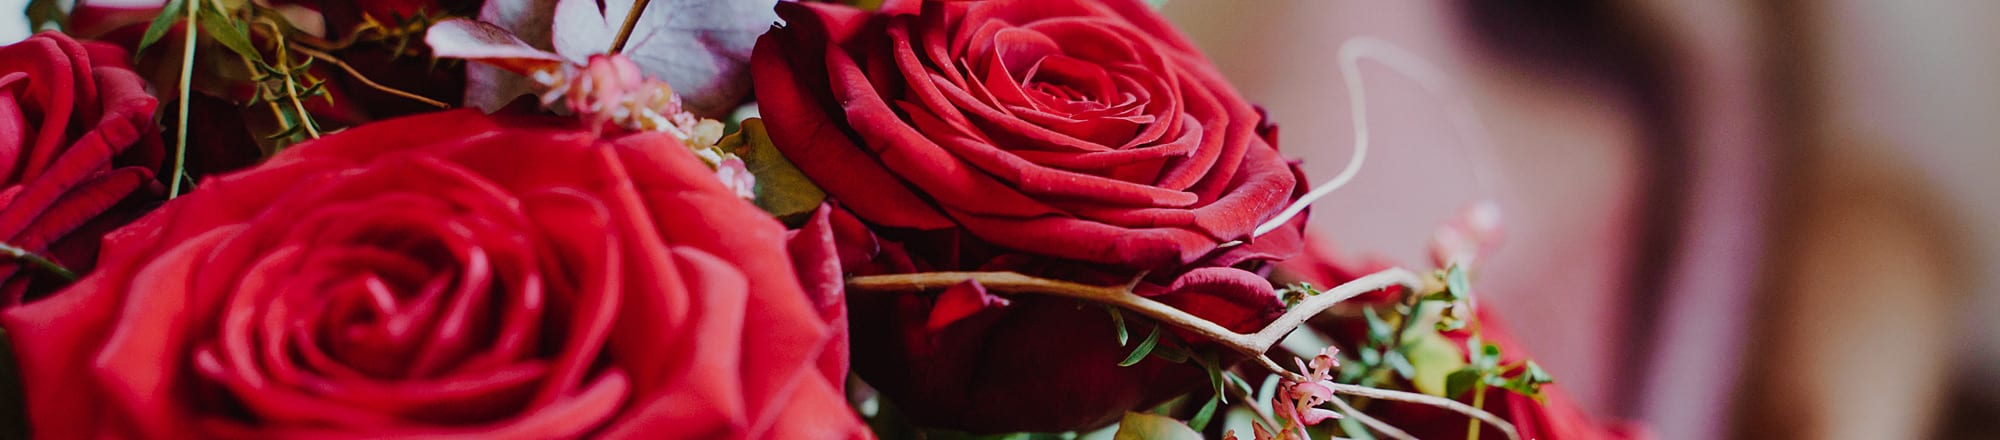 12 giugno: Giornata mondiale della rosa rossa